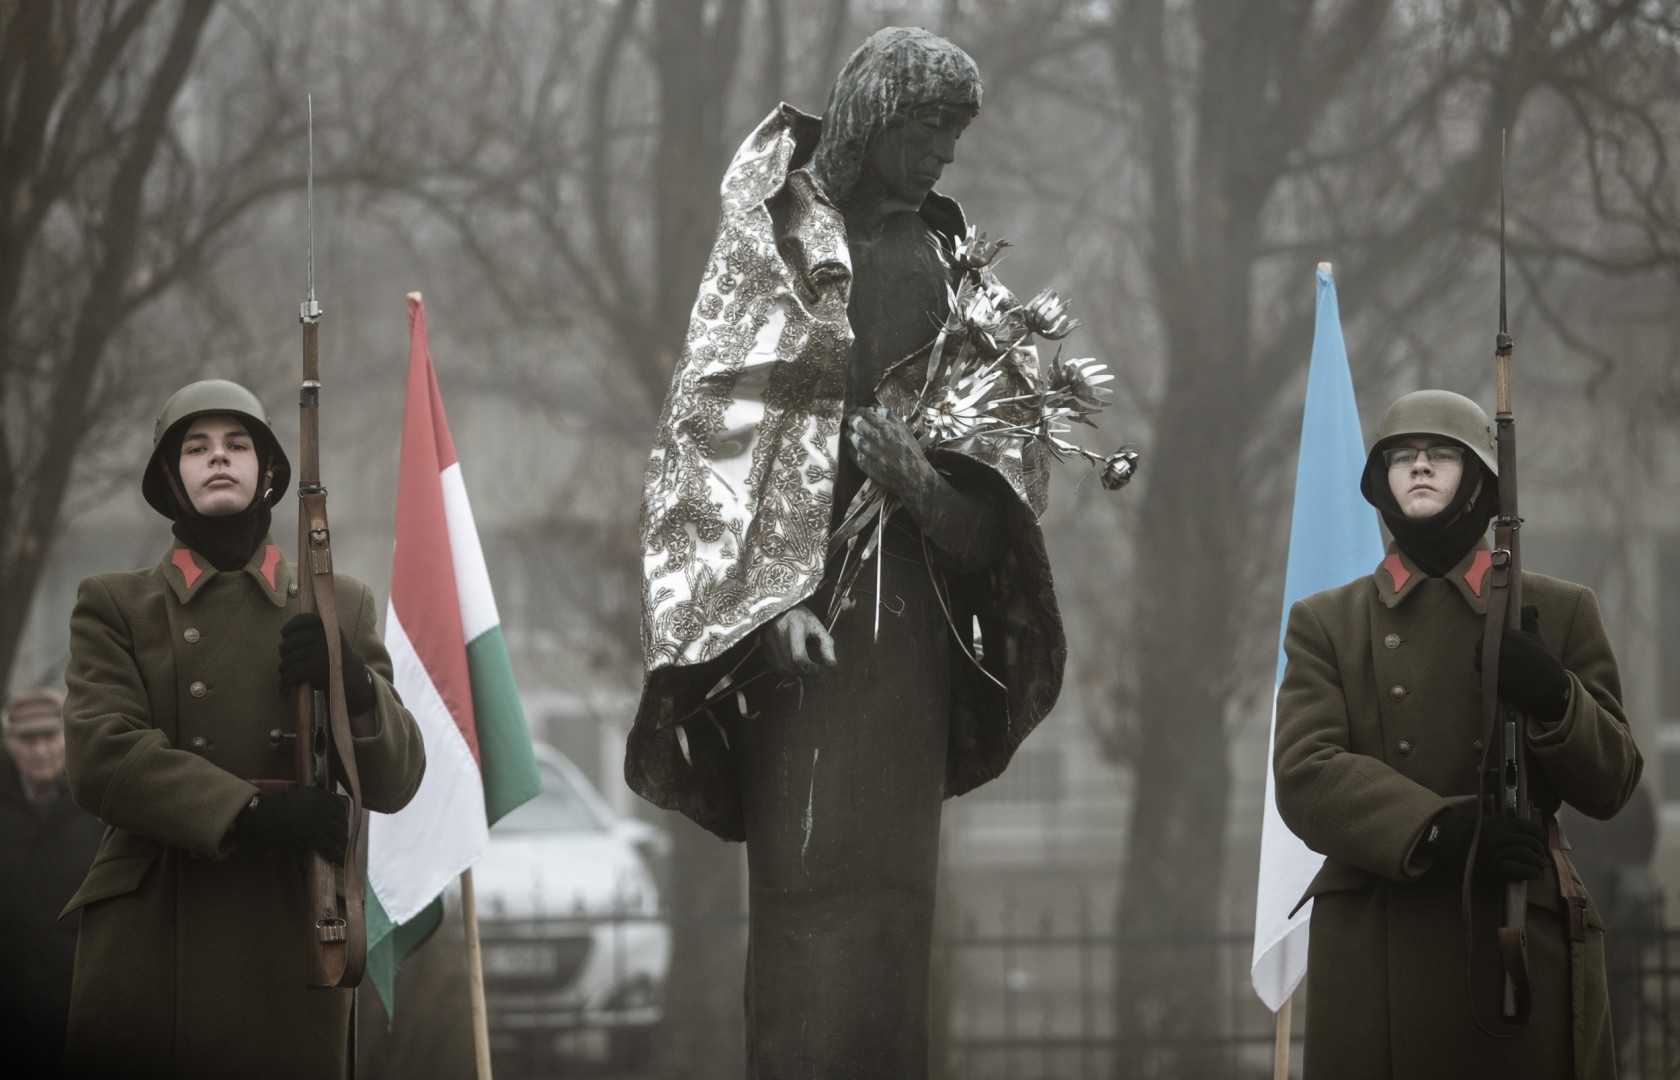 Emlékezzünk közösen a magyar hadsereg doni katasztrófájának áldozataira